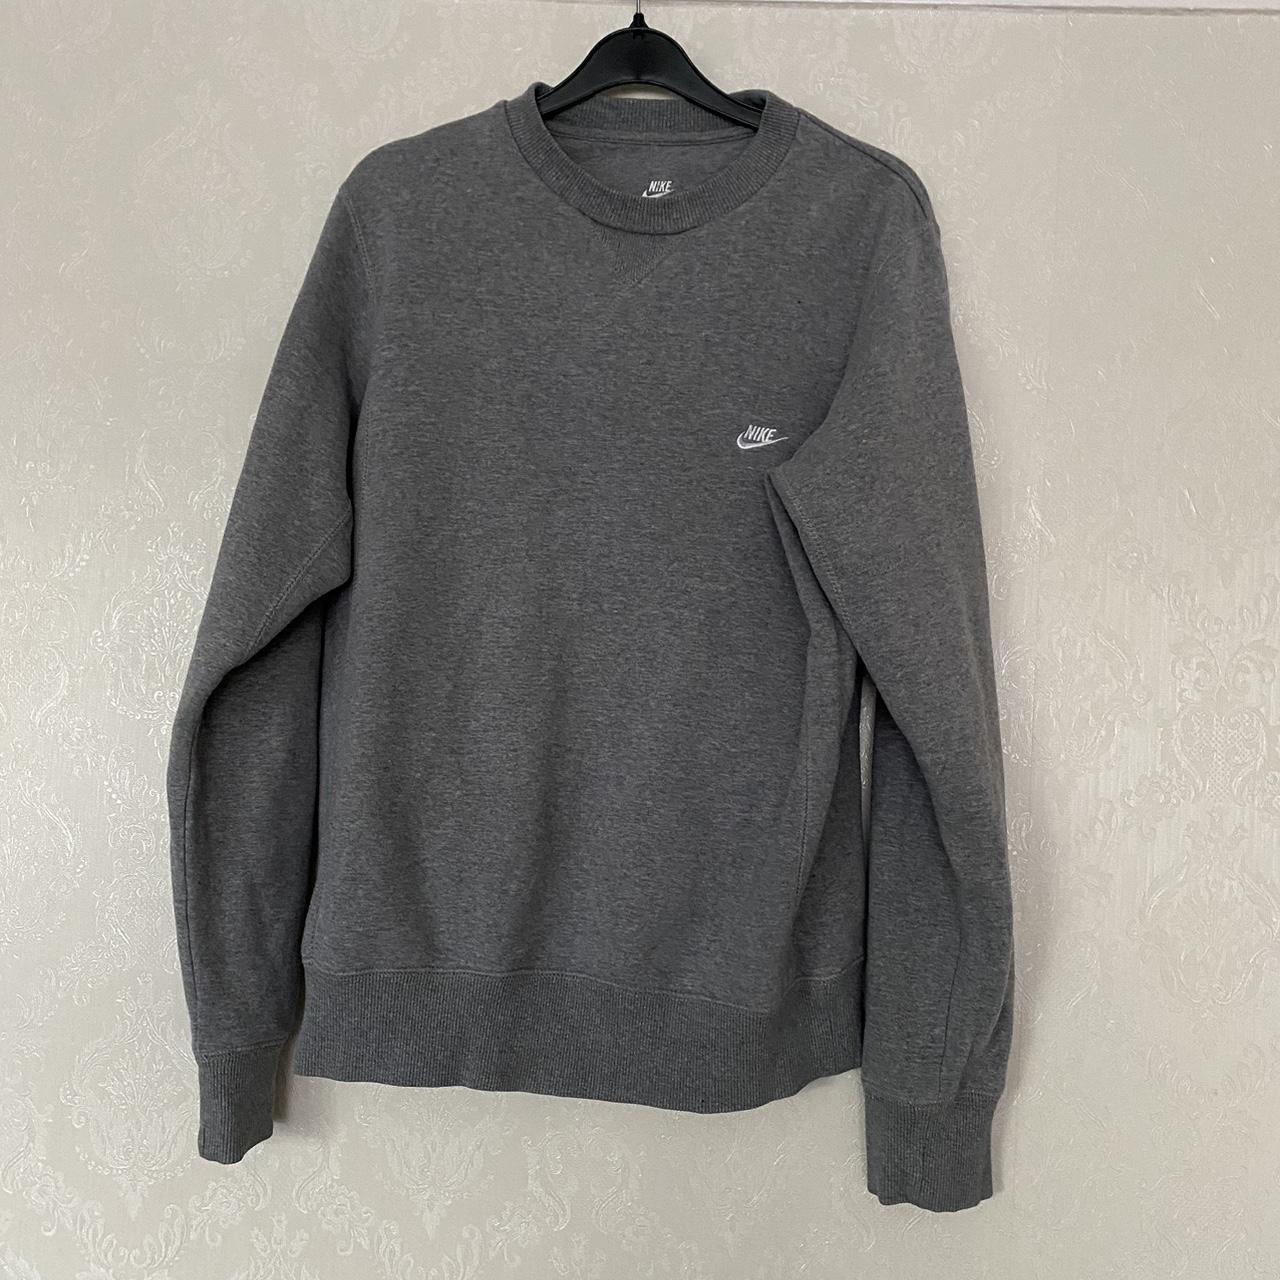 Grey Nike sweatshirt - Depop